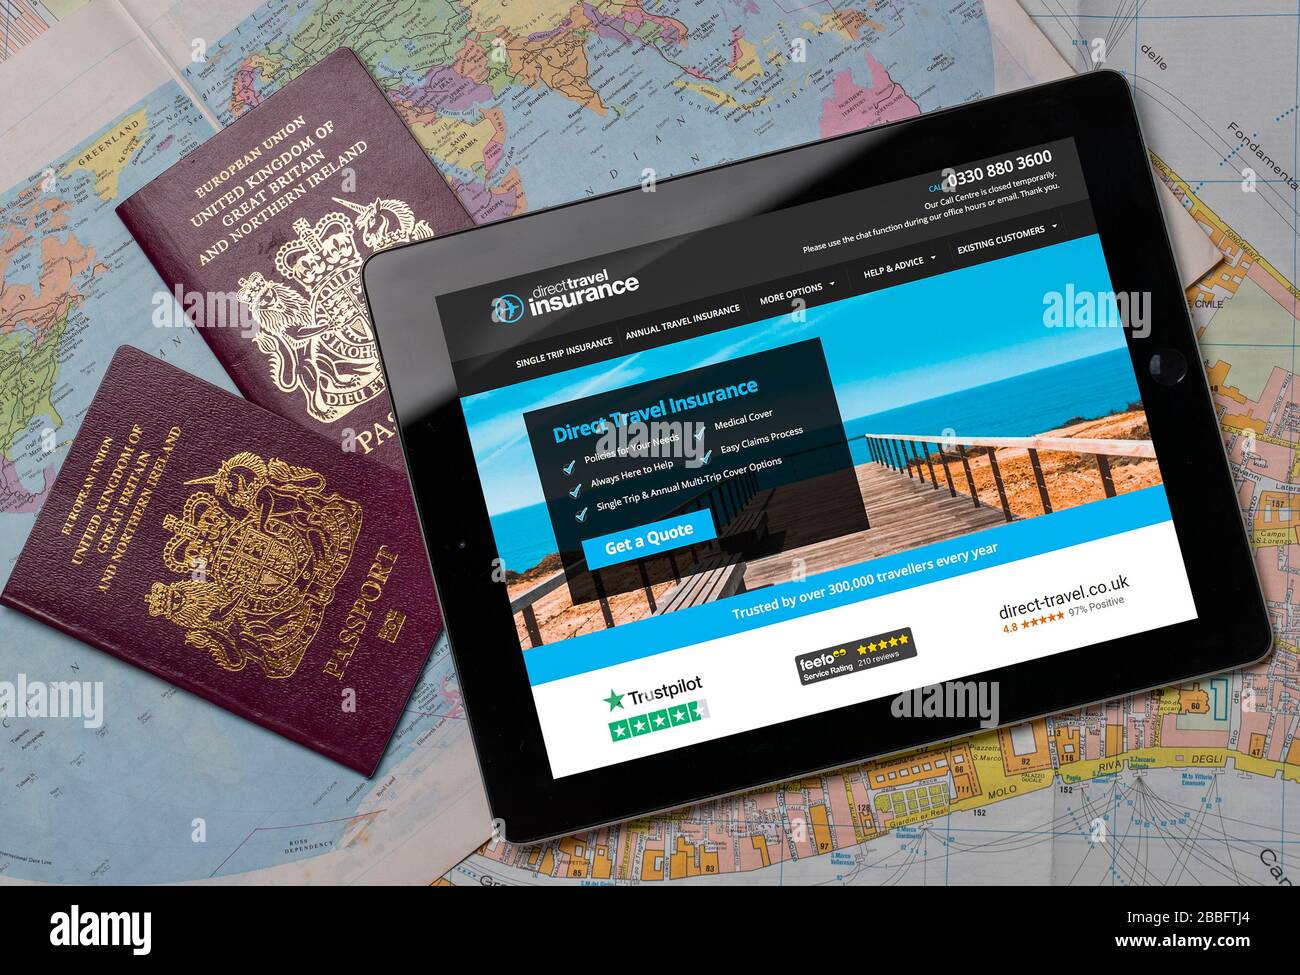 Direct Travel Travel Insurance Website auf einem iPad oder Tablet. (Nur redaktionelle Verwendung) Stockfoto